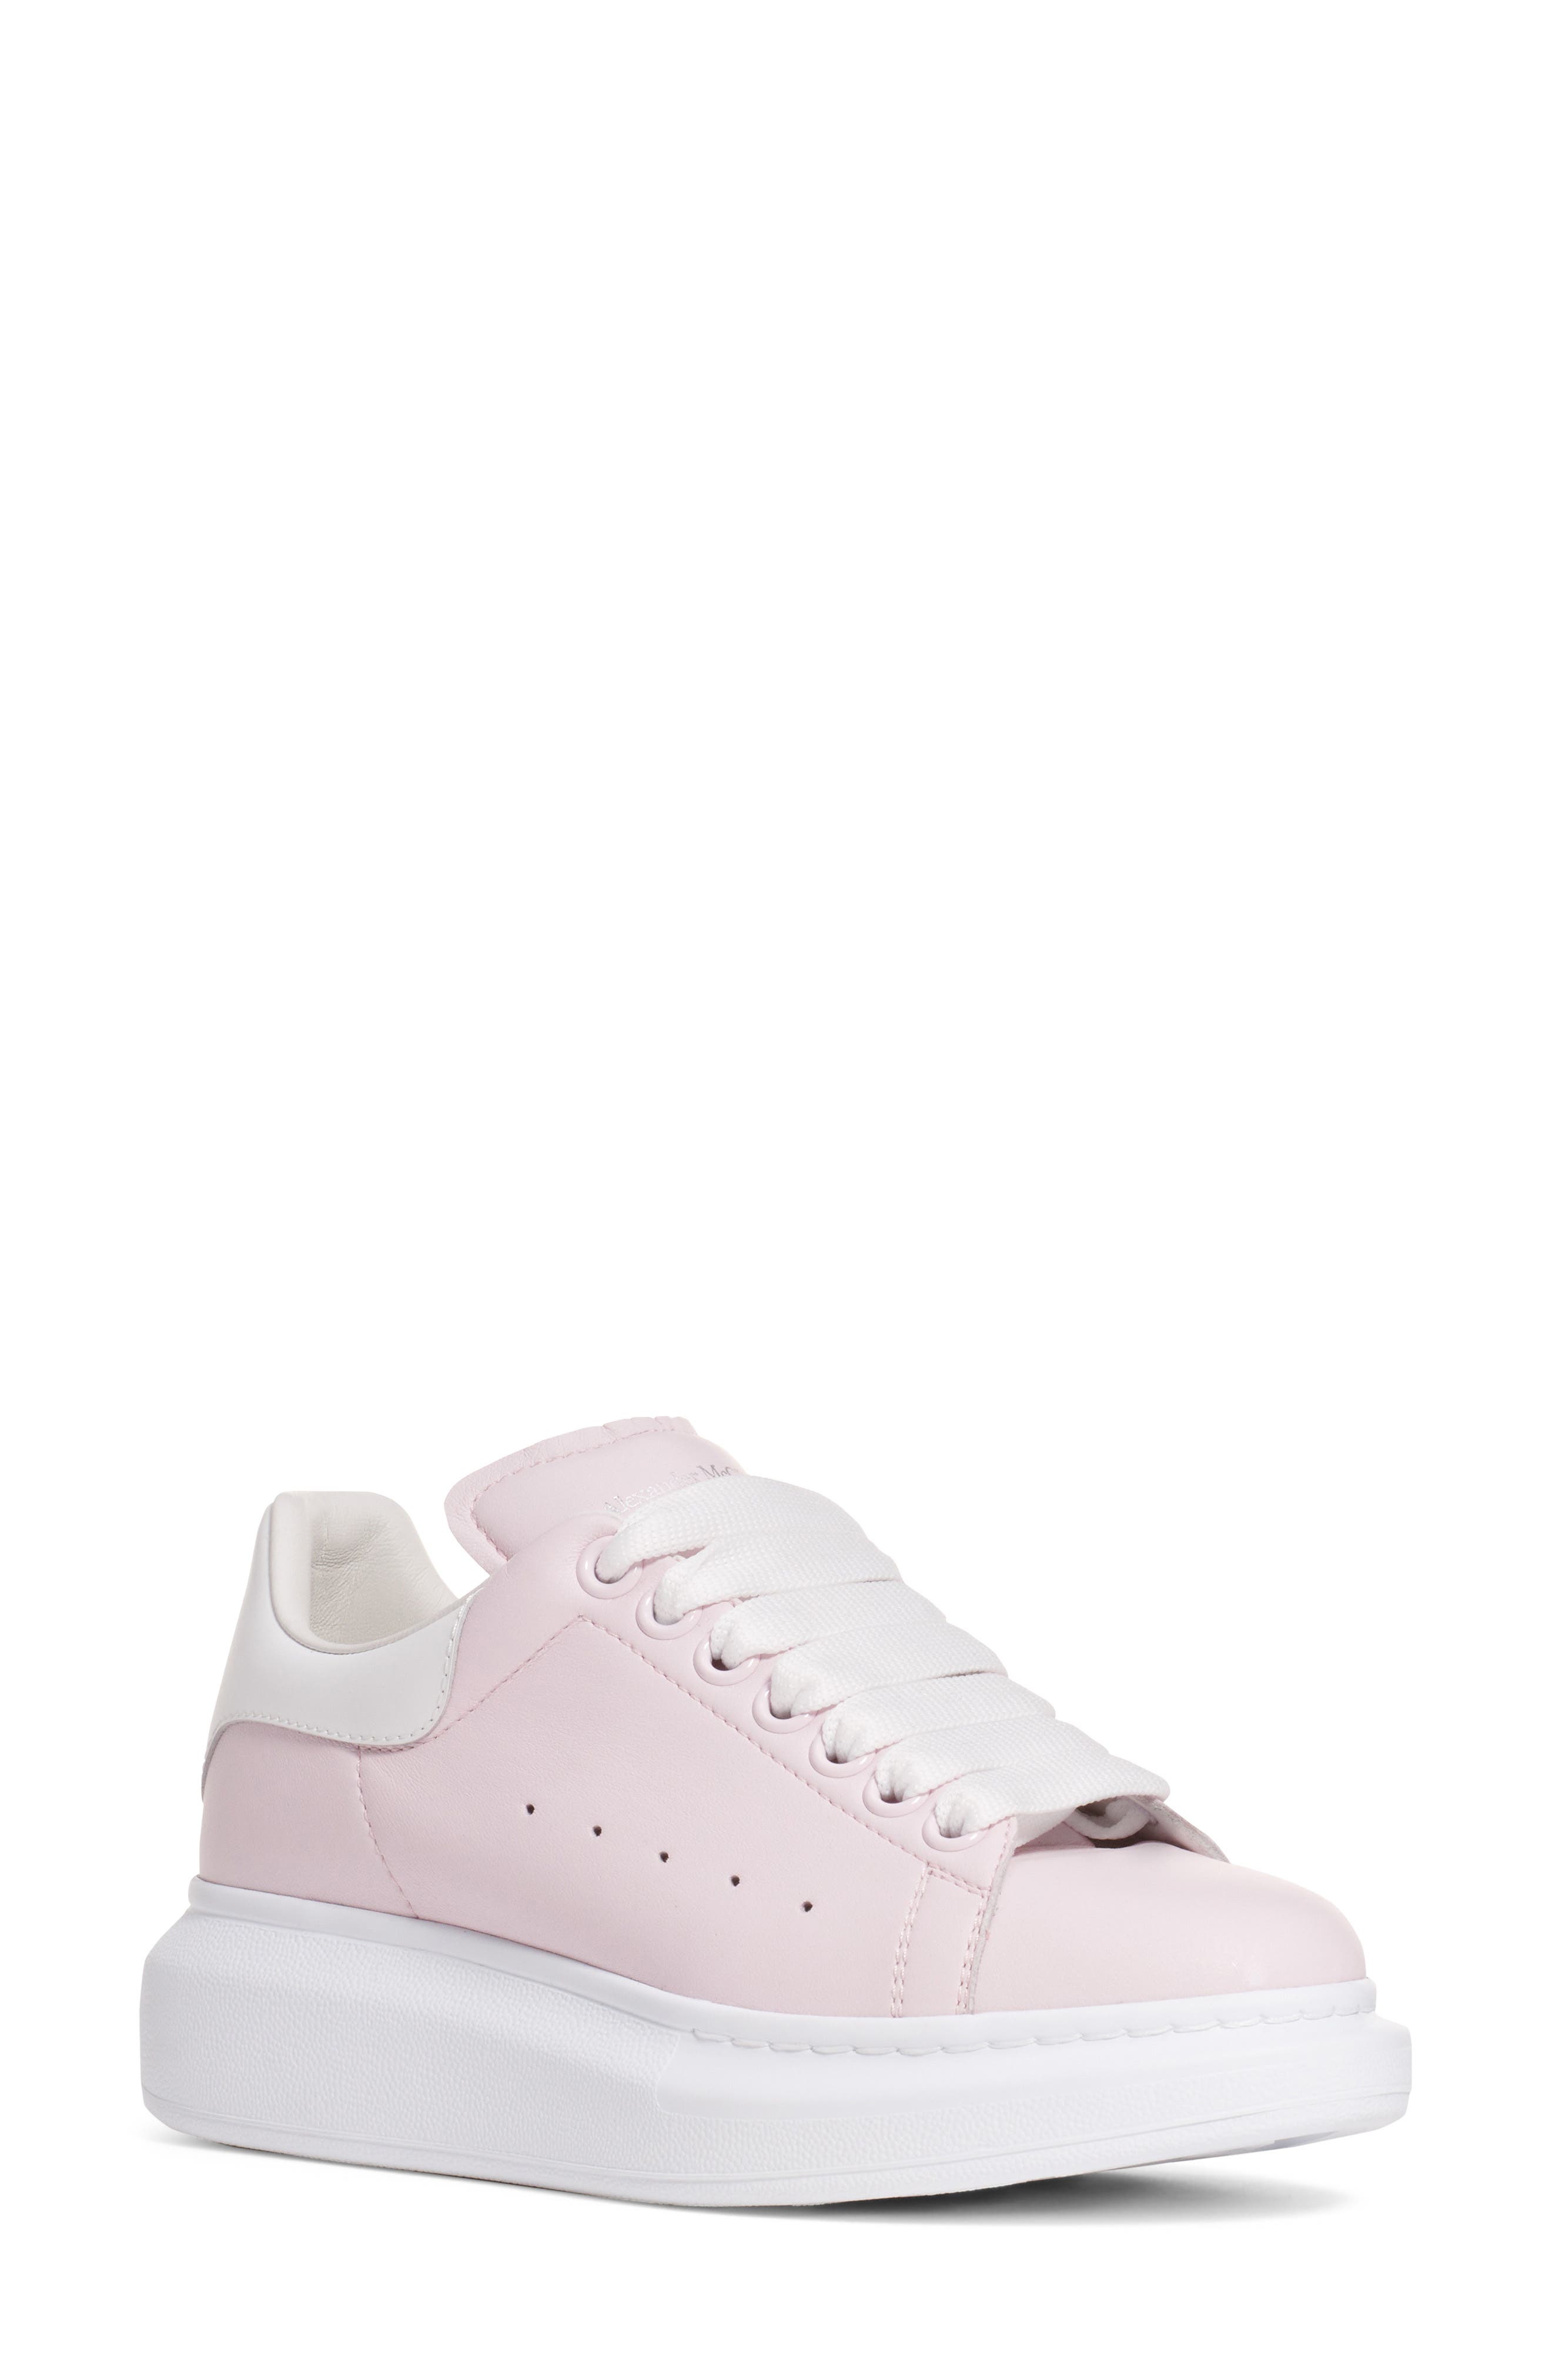 nordstrom pink sneakers